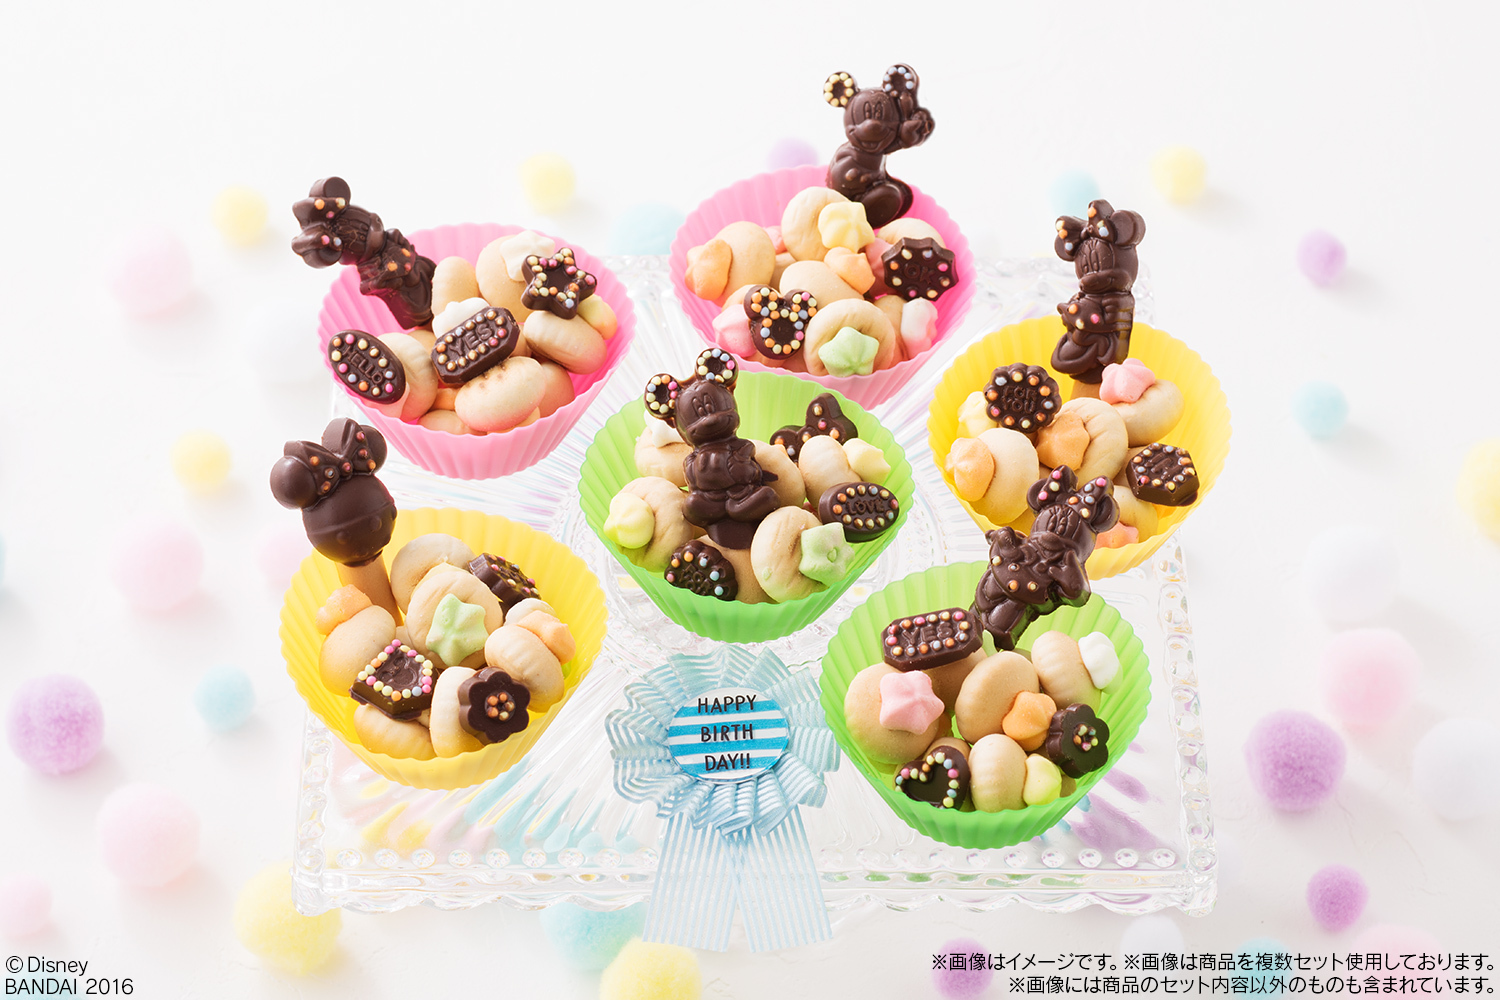 ミッキーマウスたちのチョコレート菓子が自分で作れる 子どもの想像力をのばす つくるおやつ 新作が登場 株式会社バンダイ キャンディ事業部のプレスリリース